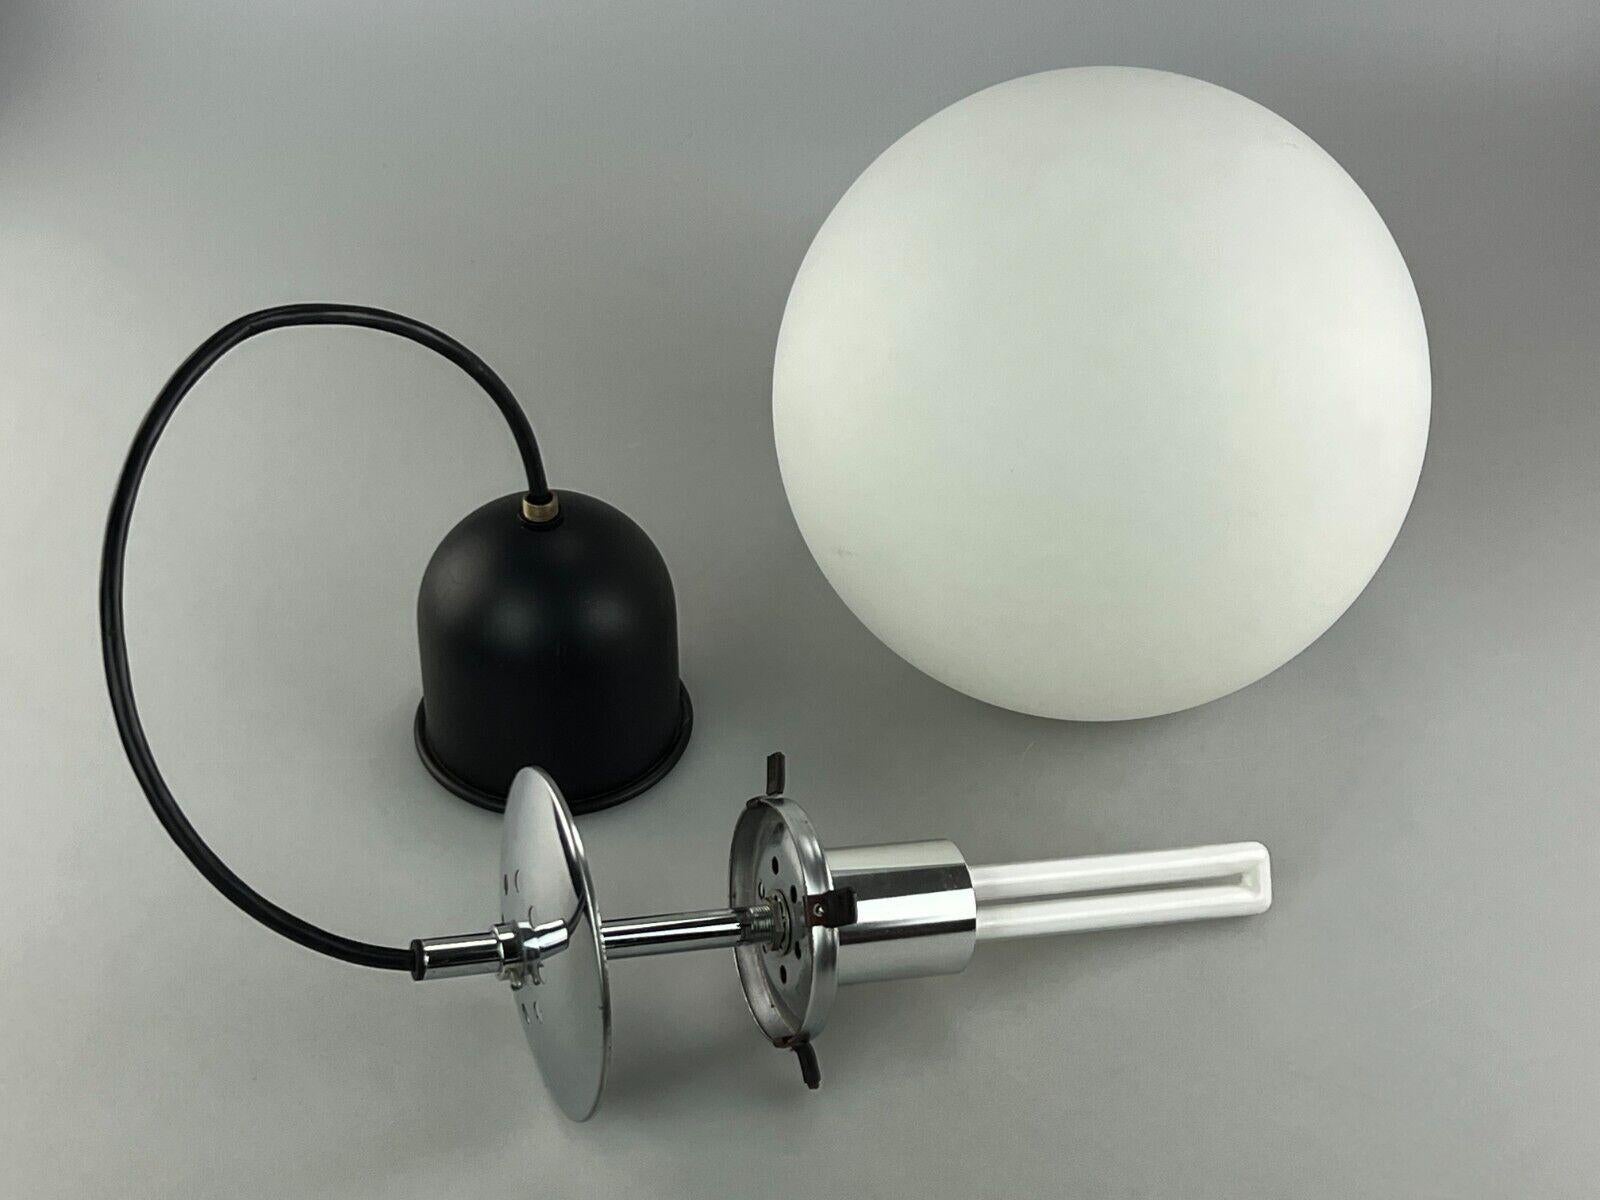 60s 70s Lamp Light Ceiling Lamp Limburg Spherical Lamp Ball Design 1